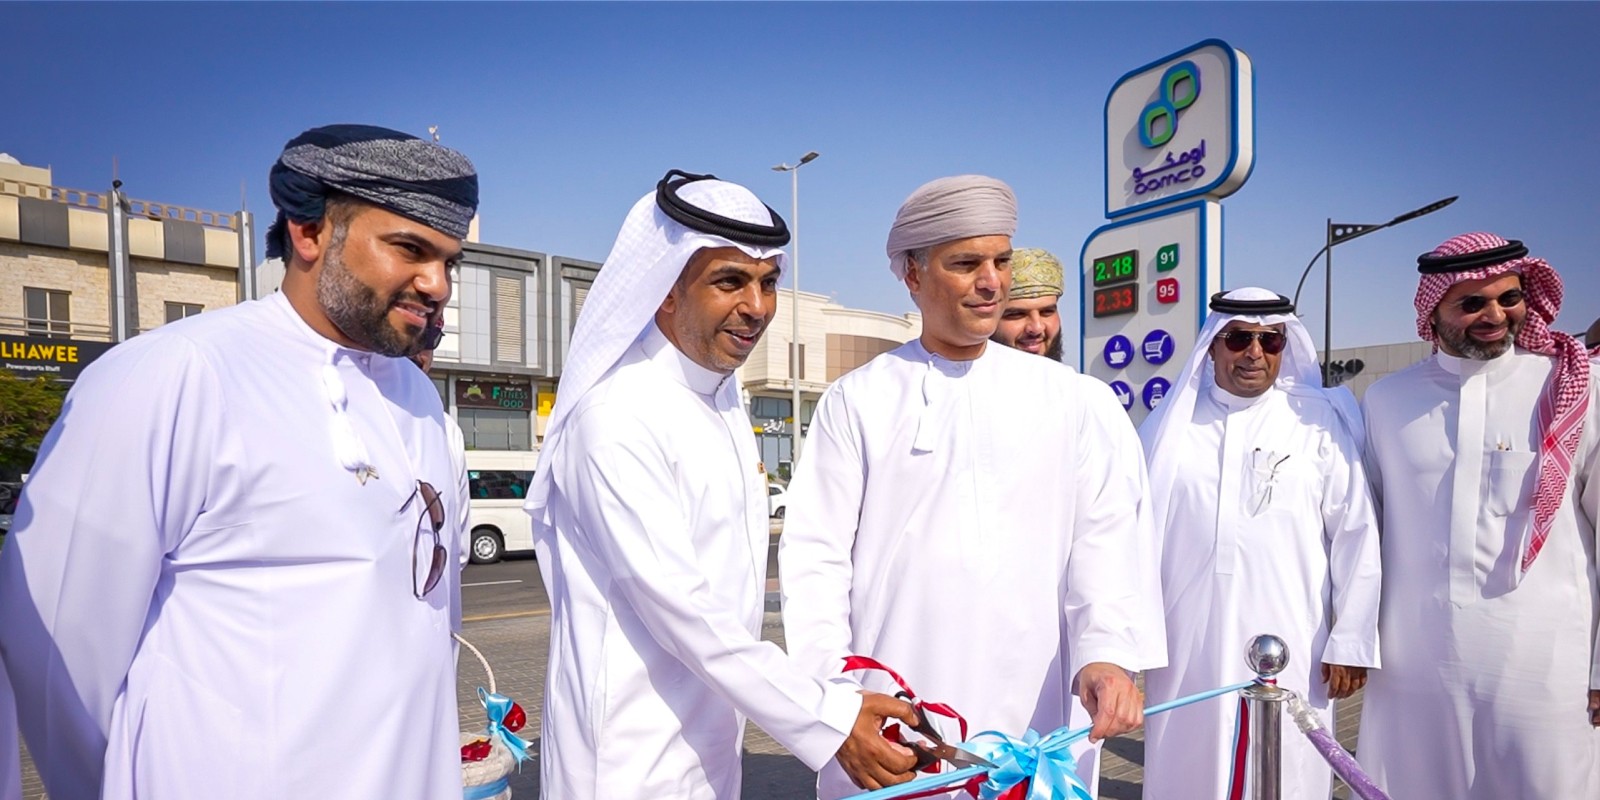 شركة النفط العُمانية للتسويق توسع رقعة انتشارها في المملكة العربية السعودية عبر إضافة 14 محطة خدمة جديدة